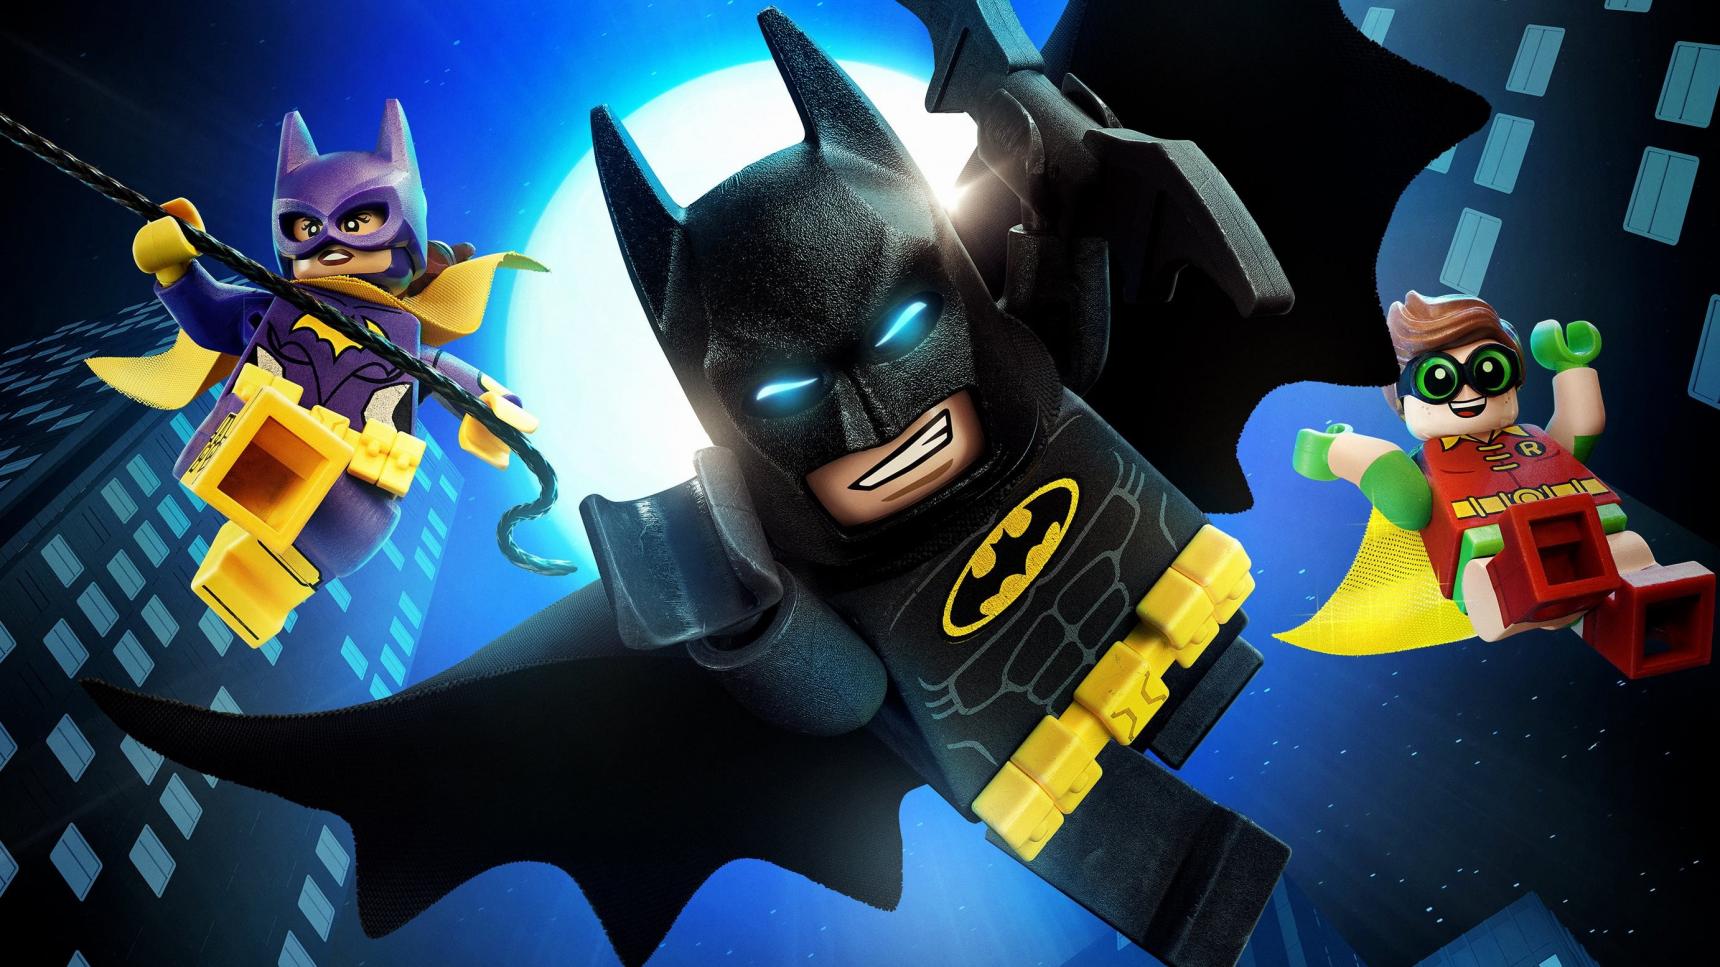 Ver Batman: La LEGO película Online Gratis (⚜️ 2017) | CUEVANA3